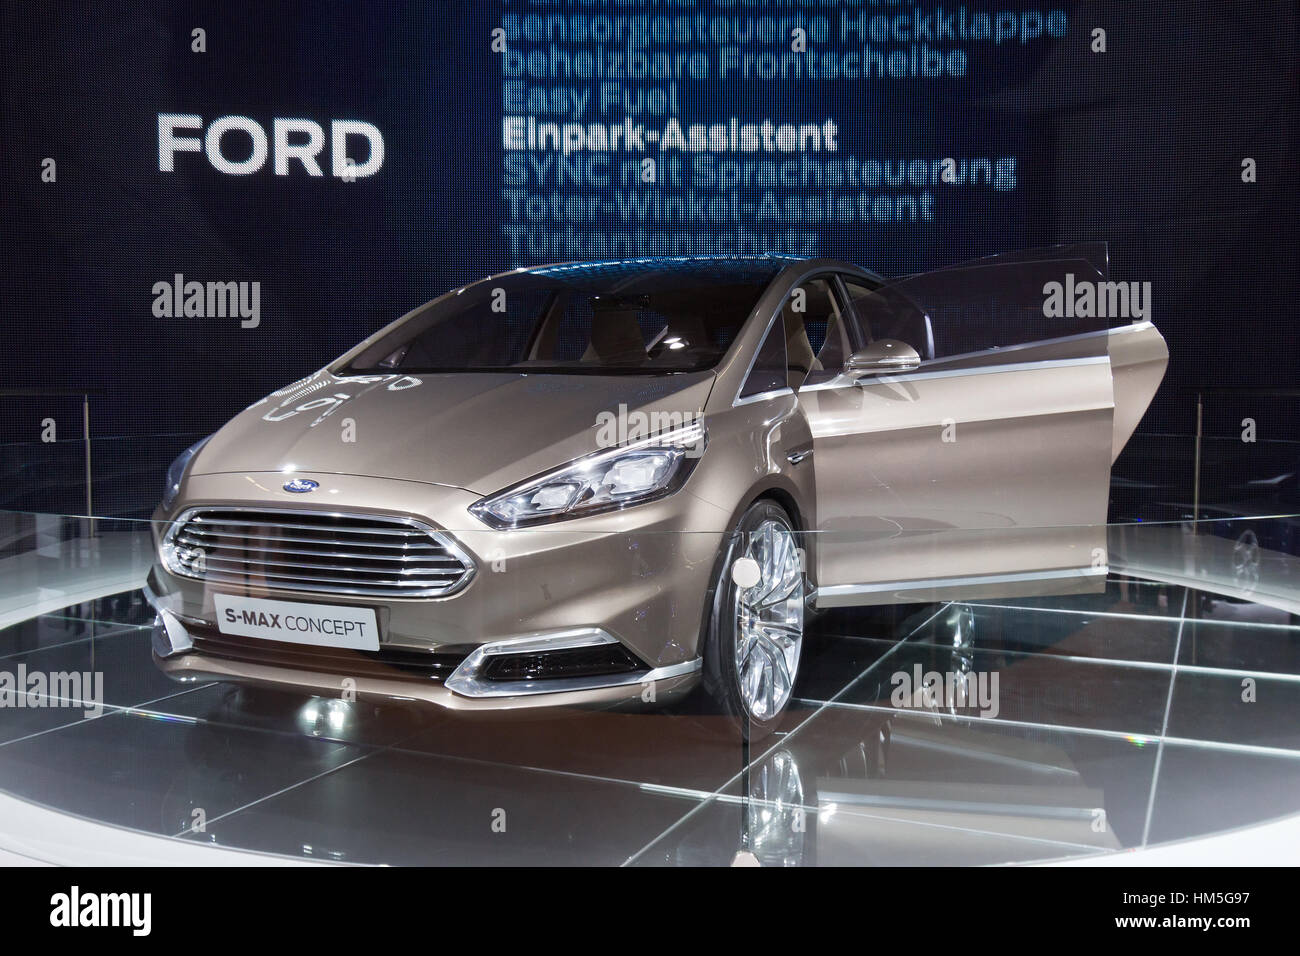 Francfort, Allemagne - SEP 13 : Ford S-Max Concept au salon automobile IAA le Sep 13, 2013 à Francfort. Plus de 1.000 exposants de 35 pays sont p Banque D'Images